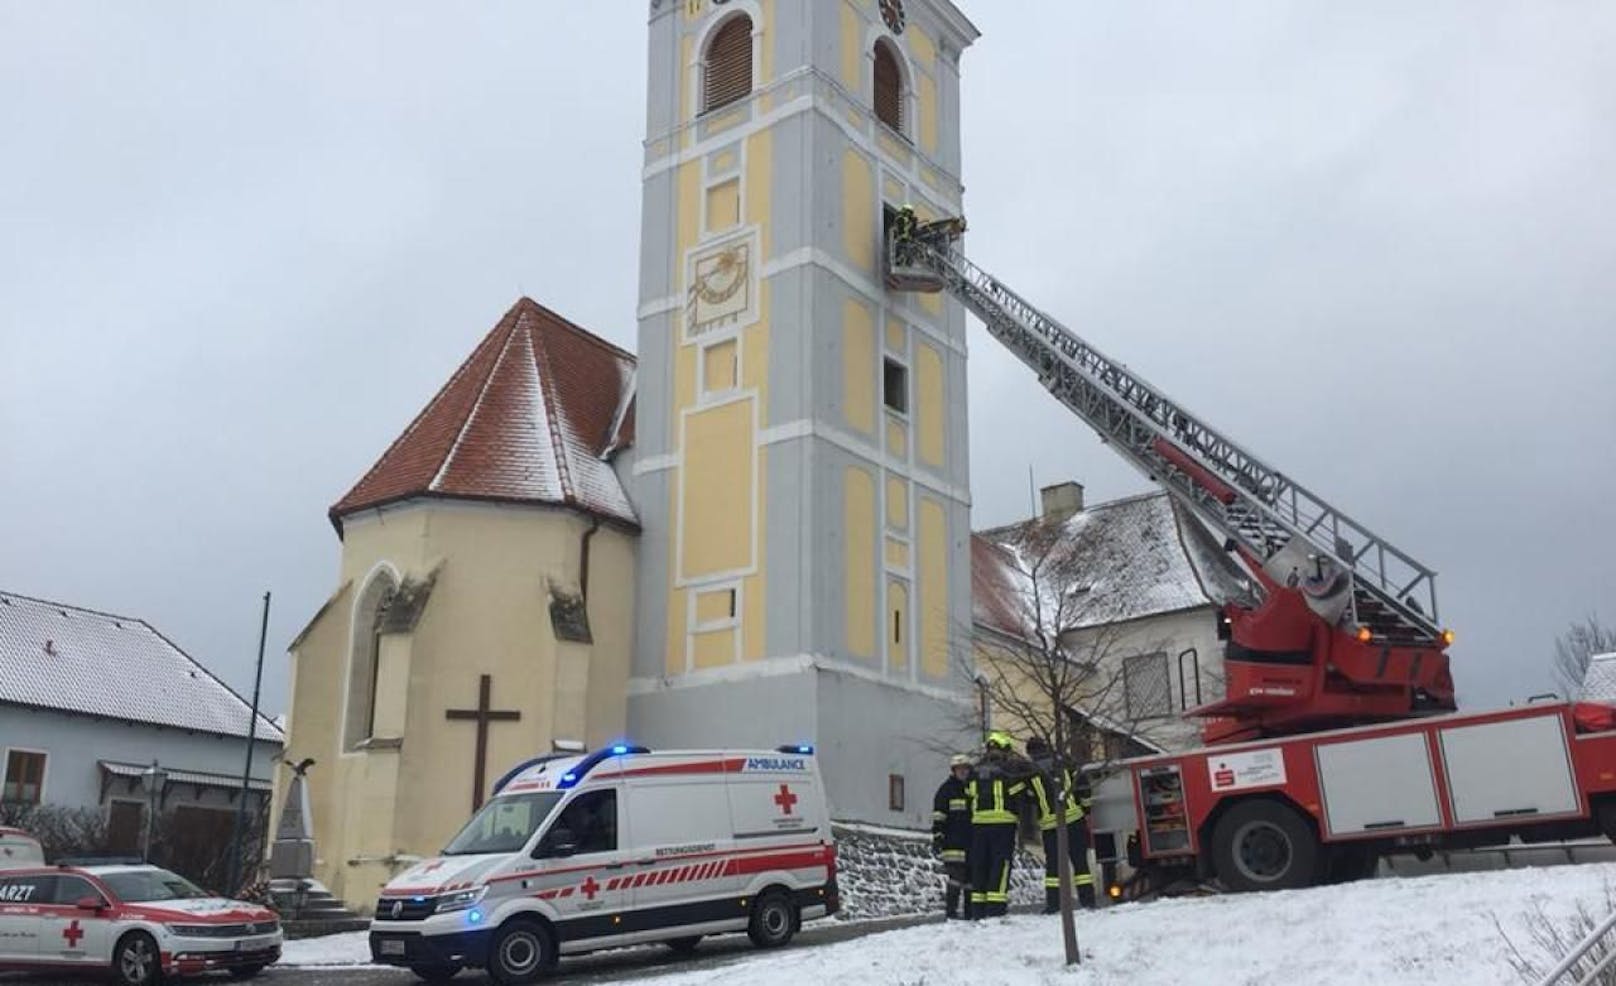 Mann stürzt bei Arbeiten an Glocke in Kirchturm ab